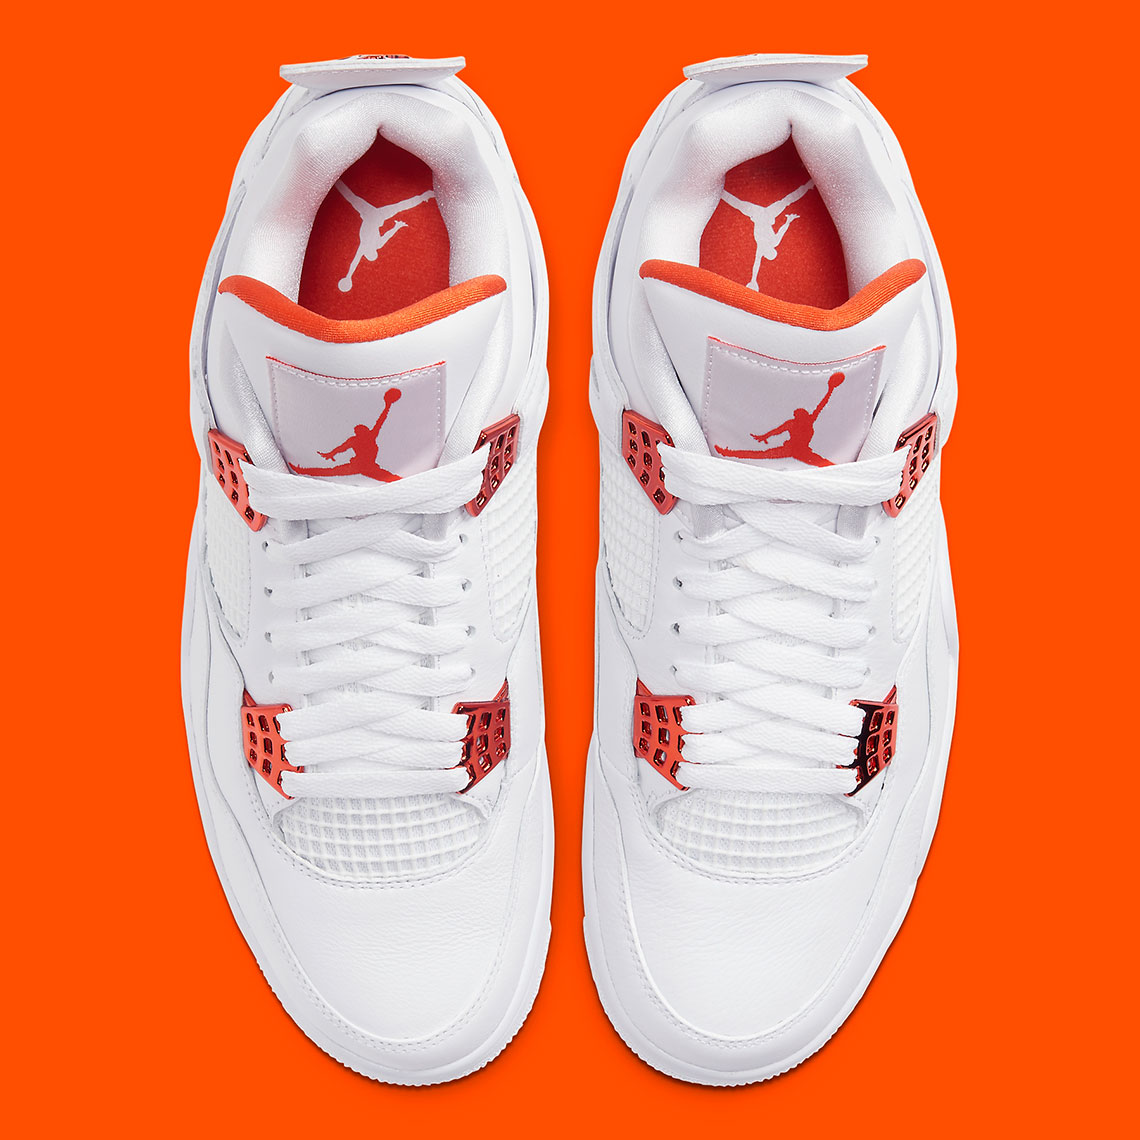 Air Jordan 4 White Metallic Orange Ct8527 118 Official Images 5